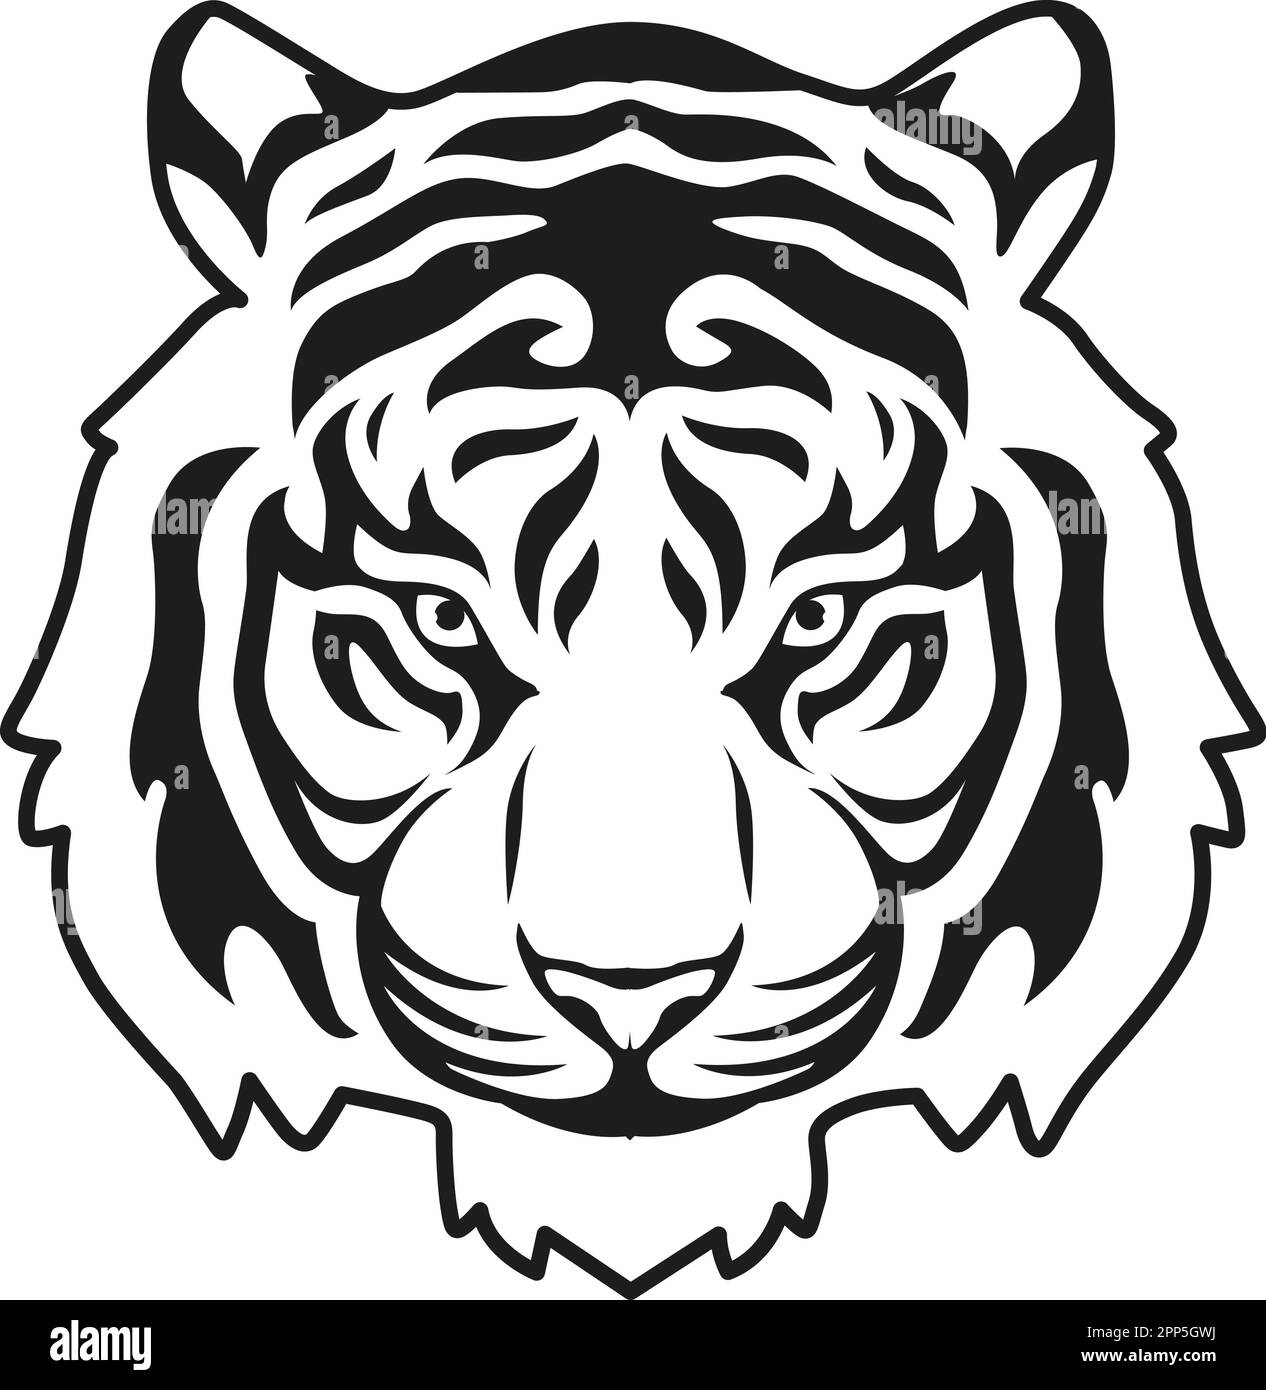 Tiger Face Expression Illustration. Tattoo Art. Vector Stock Vector ...